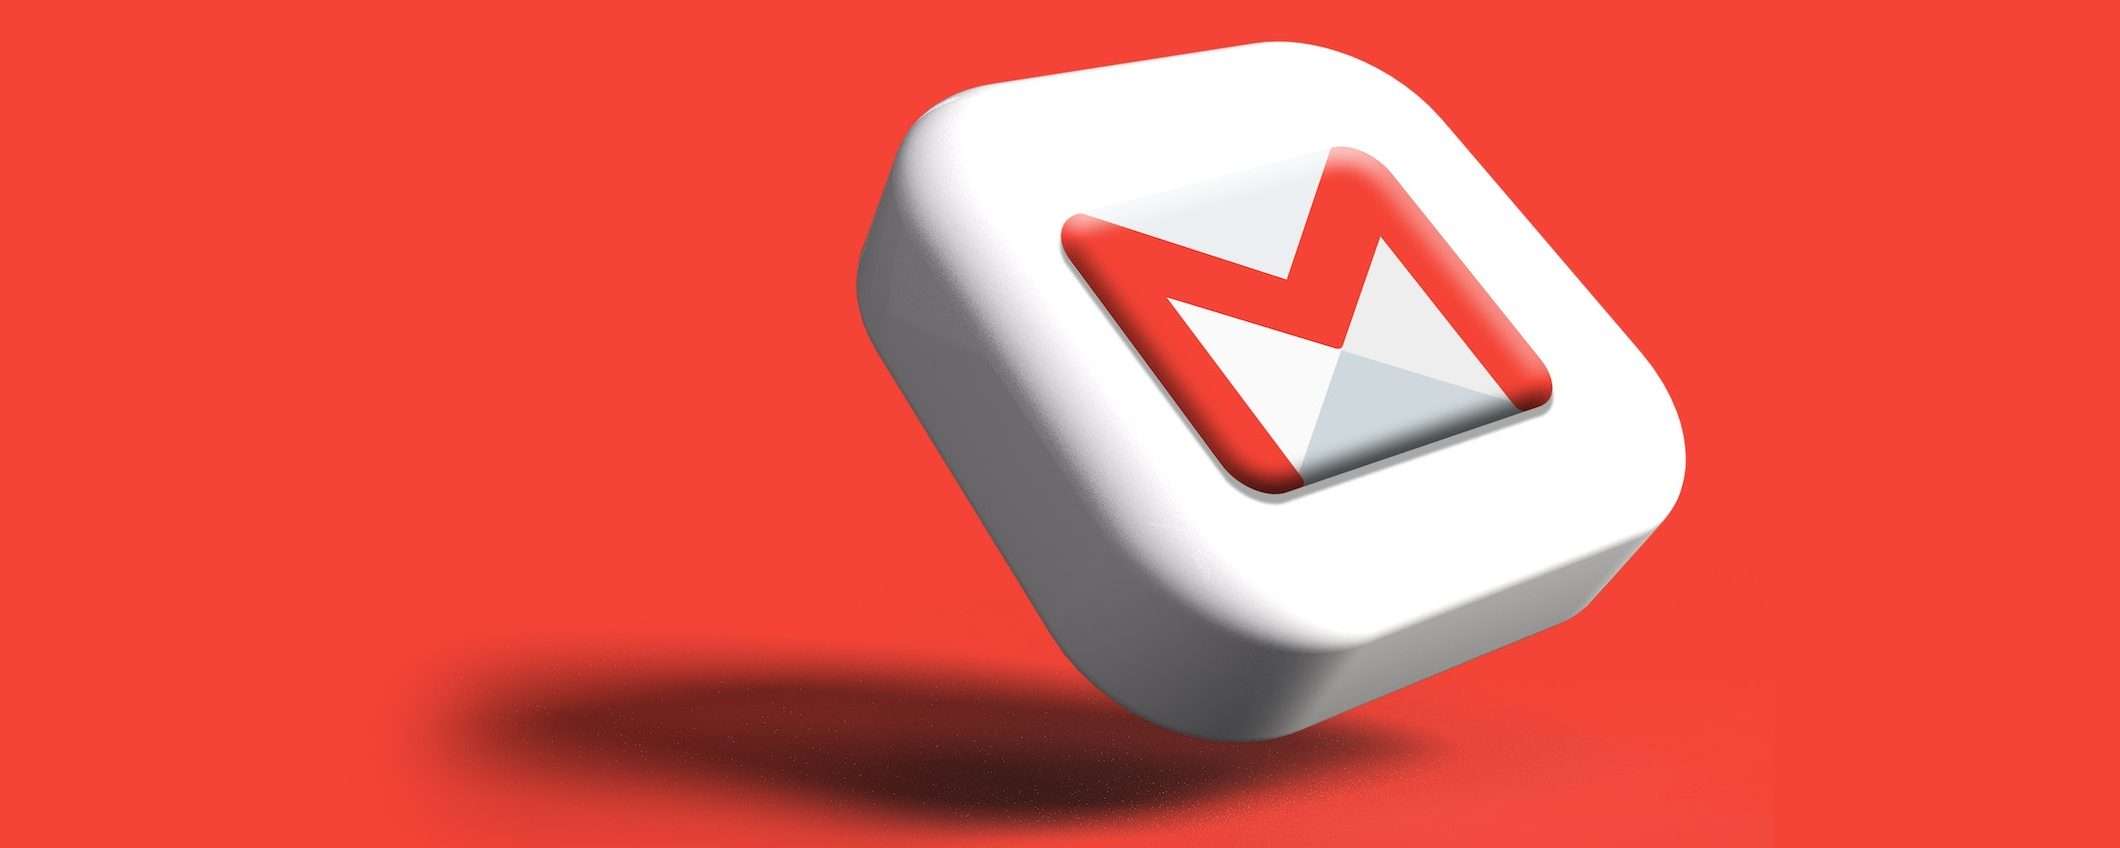 Gmail: newsletter migliori grazie a Fogli